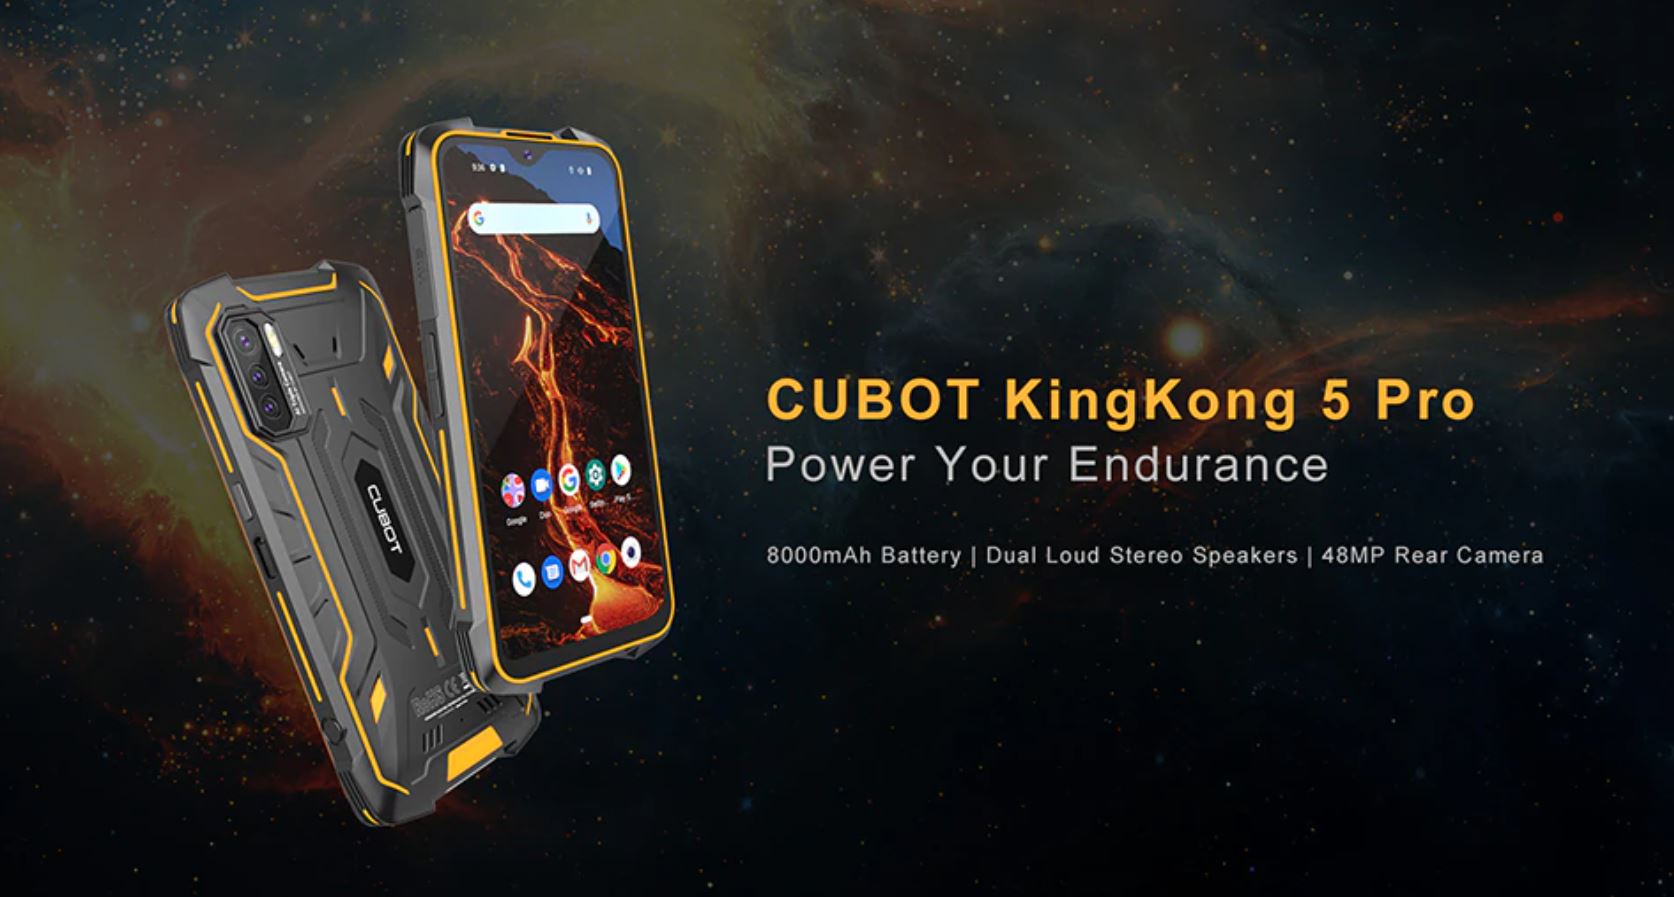 wyprzedaż smartfonów w Aliexpress na koniec wakacji - CUBOT KingKong 5 Pro